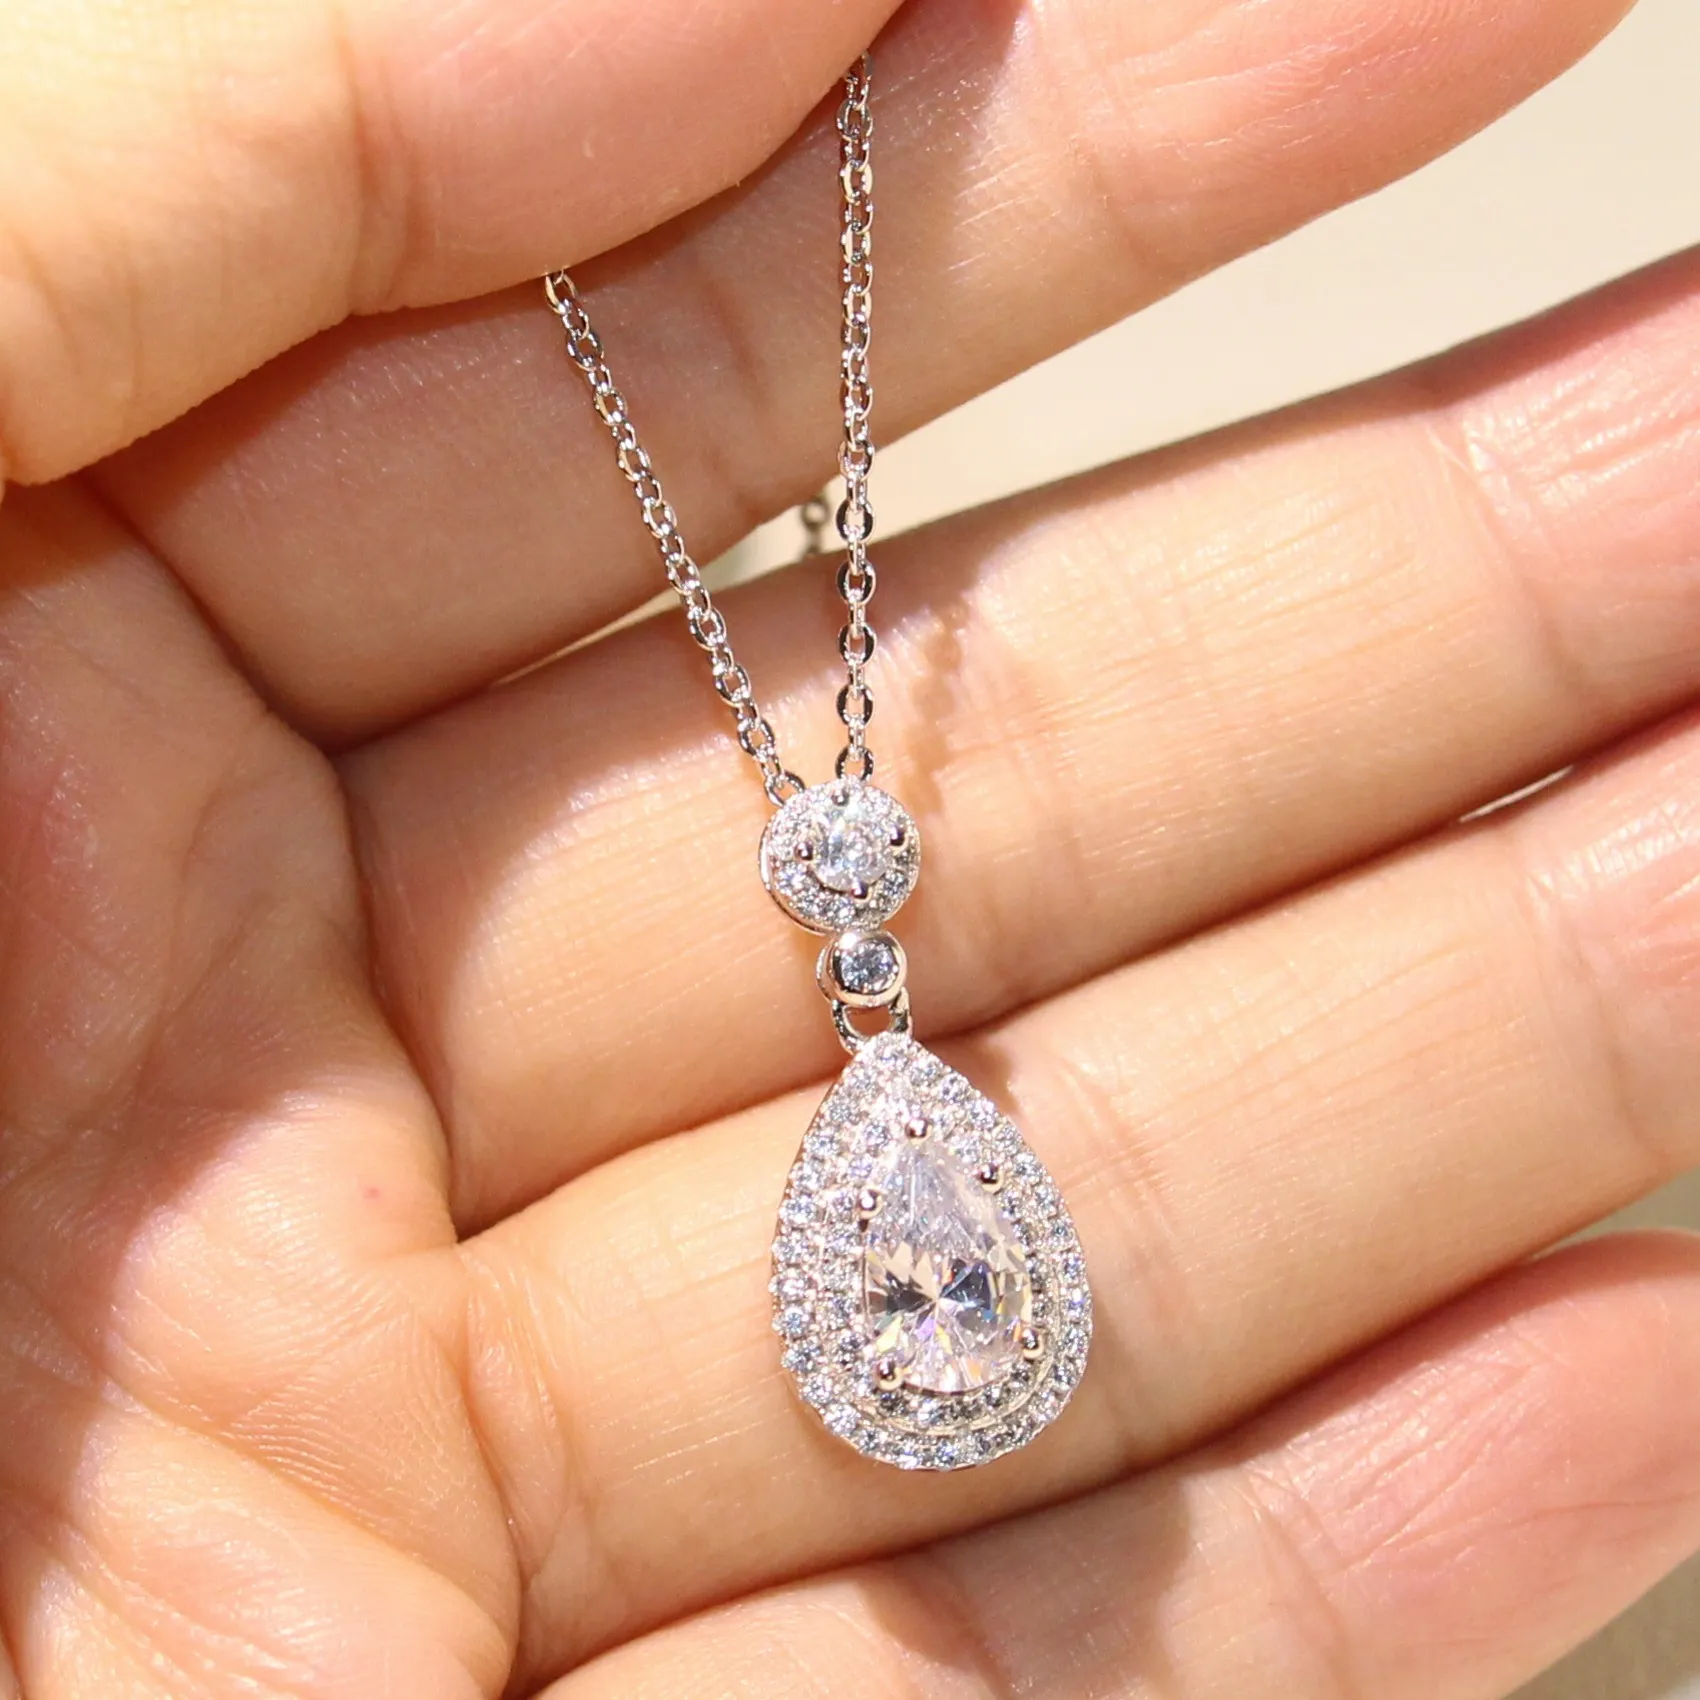 Toppsäljande hela professionella lyxiga smycken vatten dropphalsband 925 Sterling Silver Pear Shape Topaz Cz Diamond Pendant för 166p